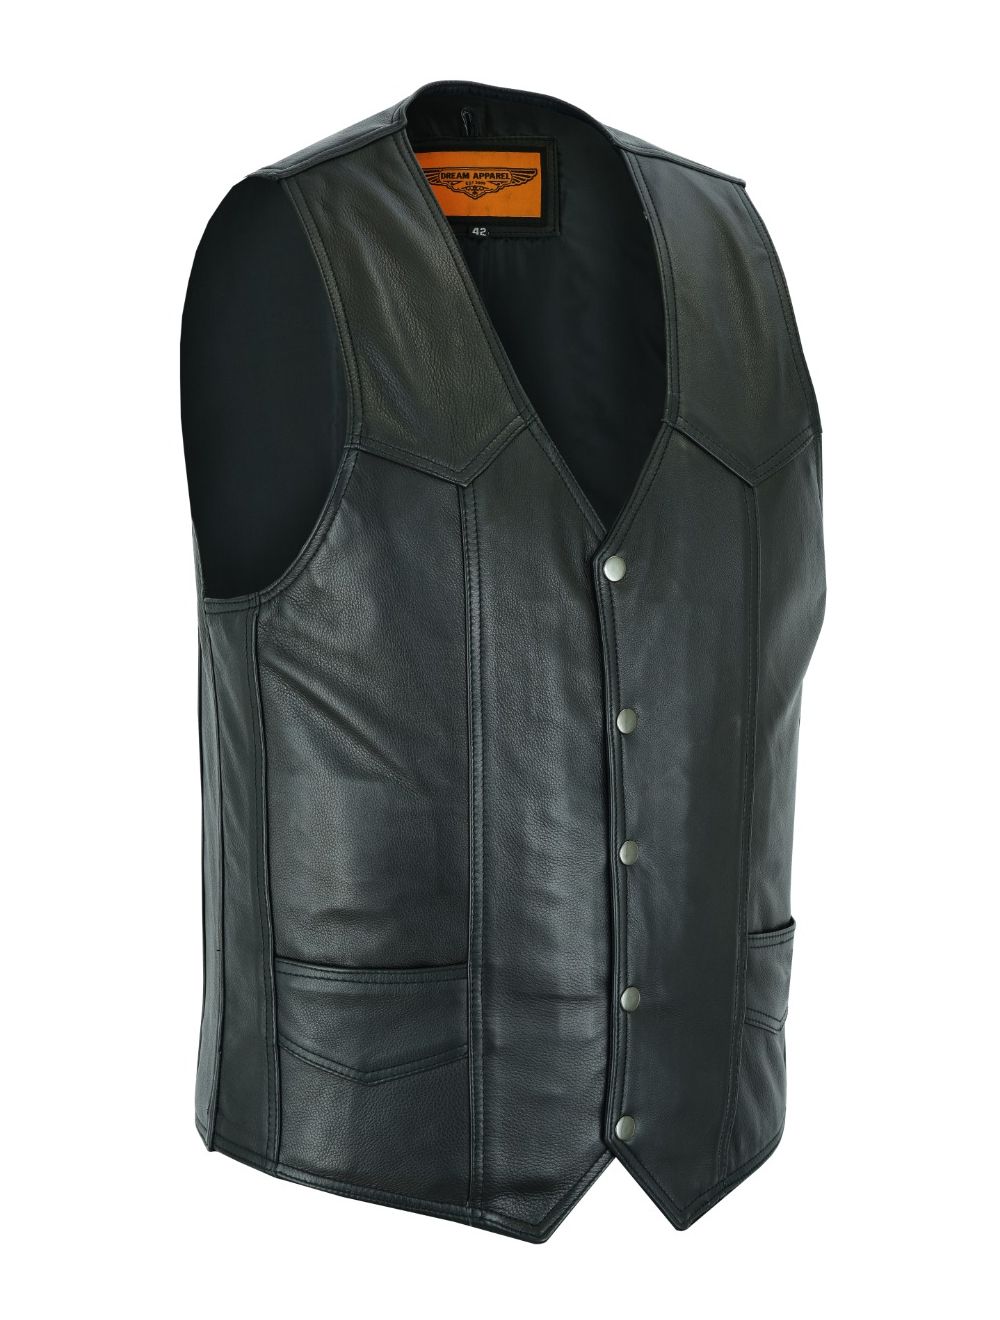 Mens Plain Black Leather Vest Heavy Duty Premium Cowhide Leather